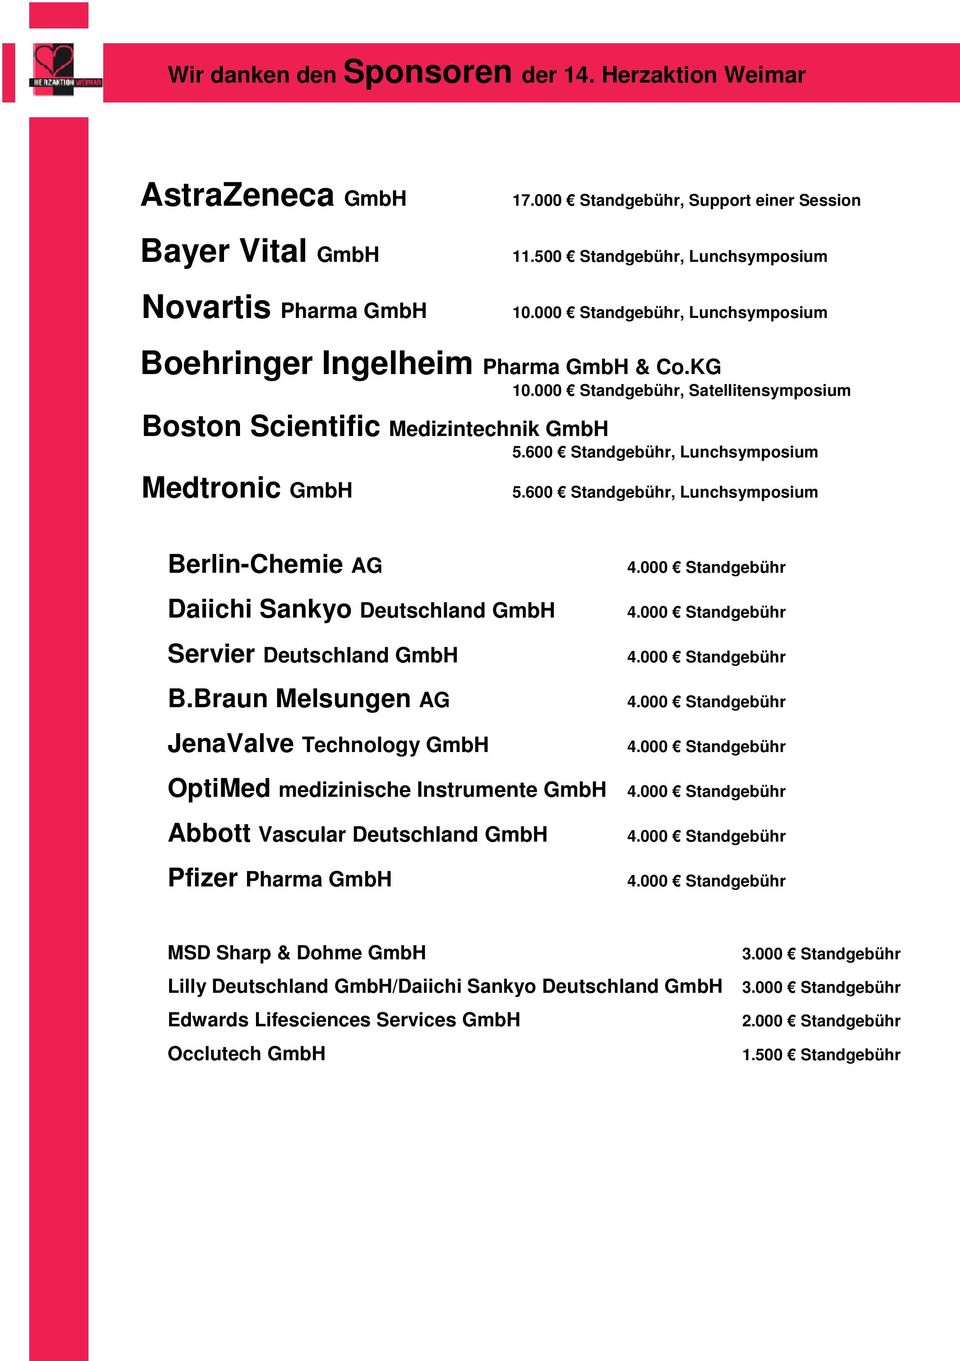 600 Standgebühr, Lunchsymposium Medtronic GmbH 5.600 Standgebühr, Lunchsymposium Berlin-Chemie AG Daiichi Sankyo Deutschland GmbH Servier Deutschland GmbH B.